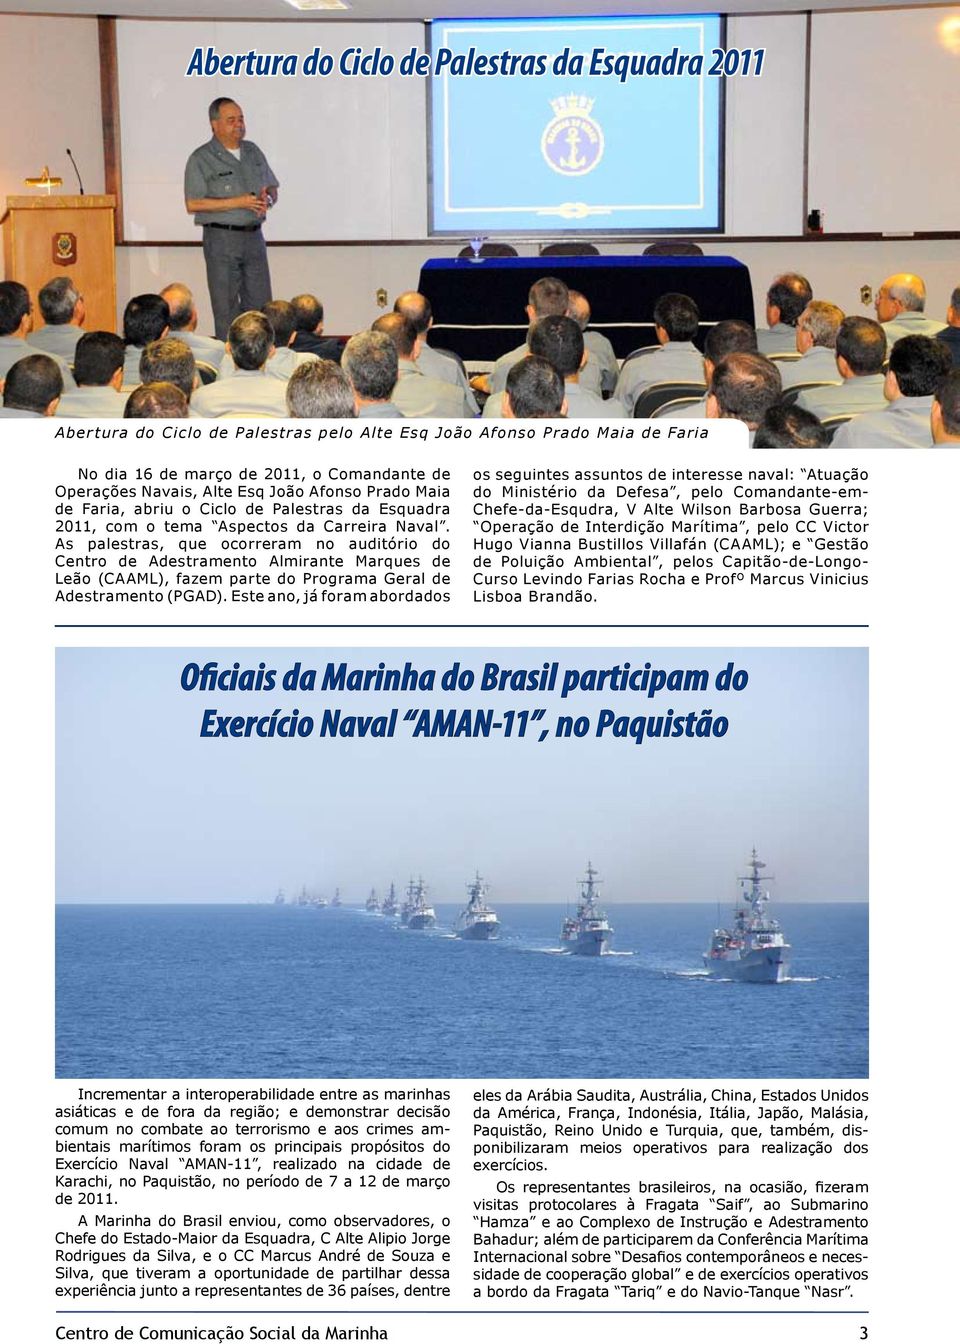 As palestras, que ocorreram no auditório do Centro de Adestramento Almirante Marques de Leão (CAAML), fazem parte do Programa Geral de Ade s tr amento (P G AD).